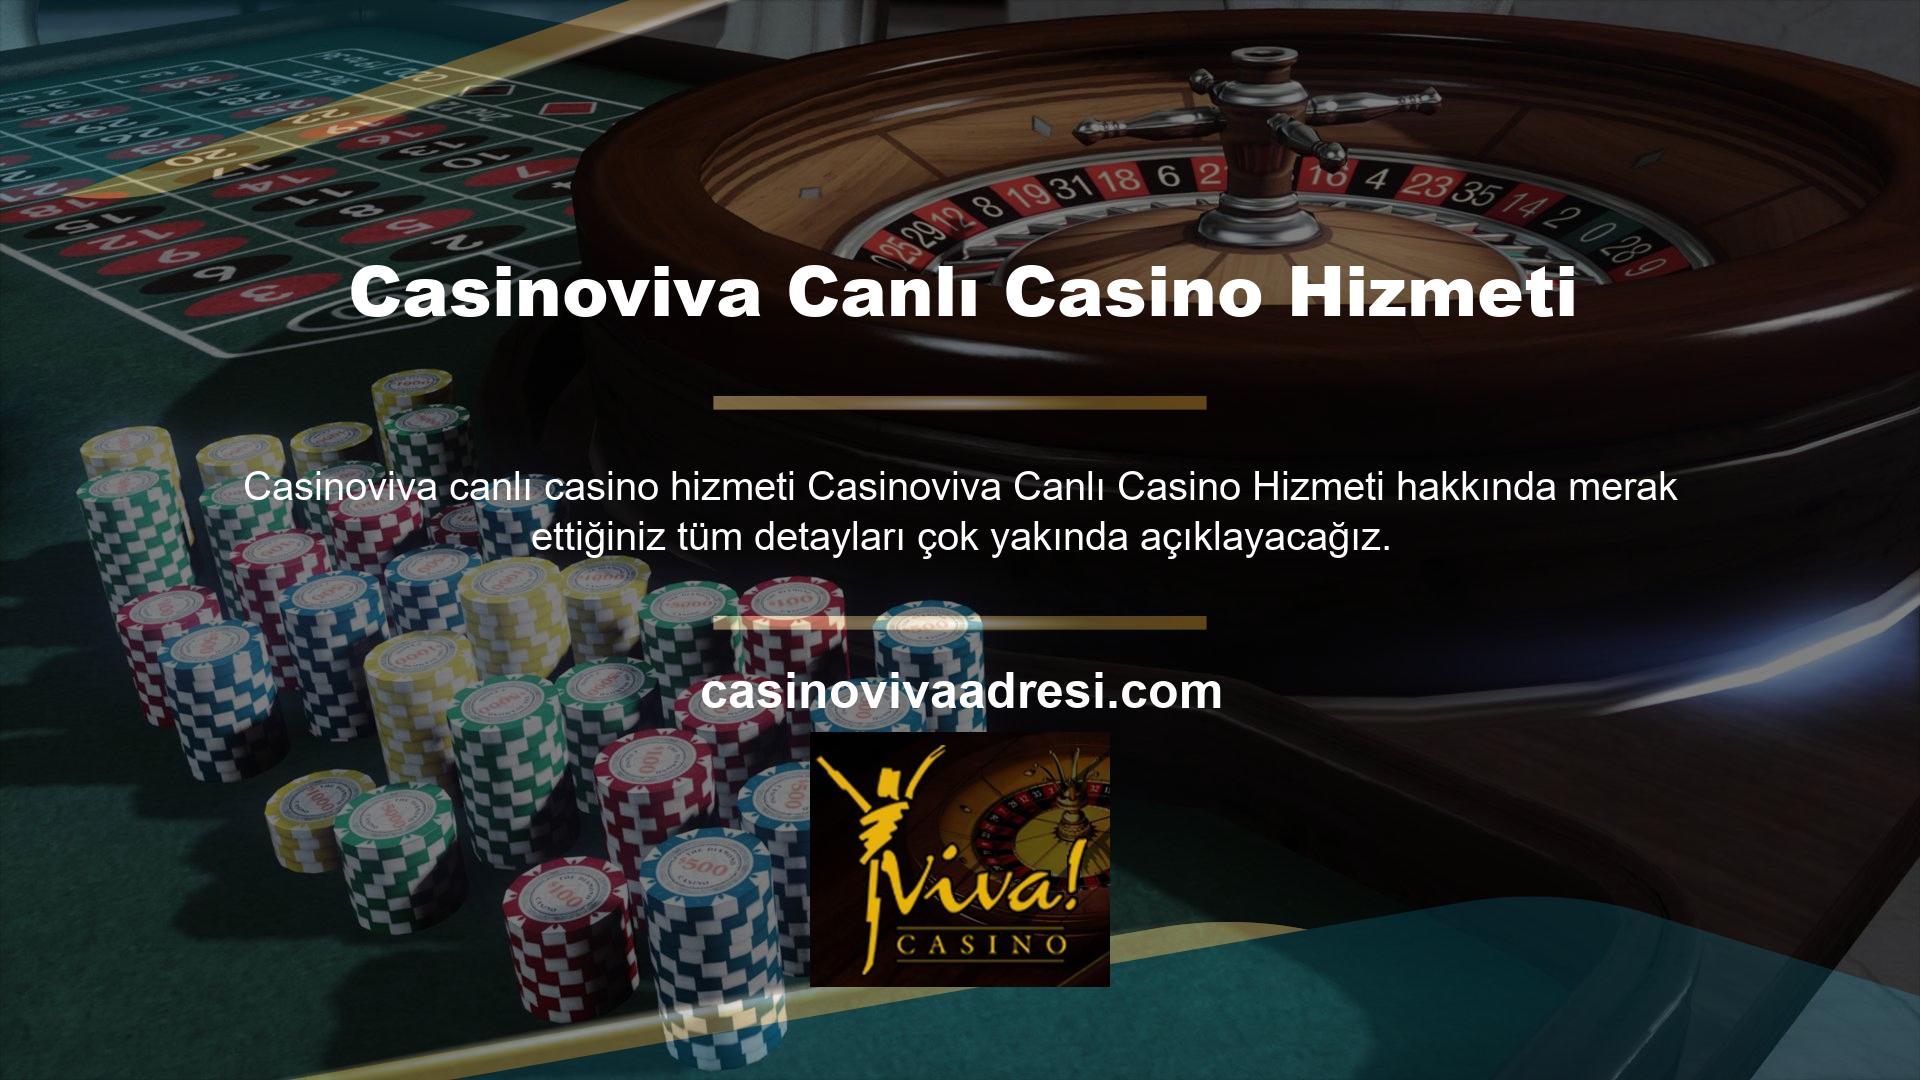 Casinoviva canlı bahis sitesi ülkemizin en popüler şirketlerinden biri olarak kabul edilmektedir